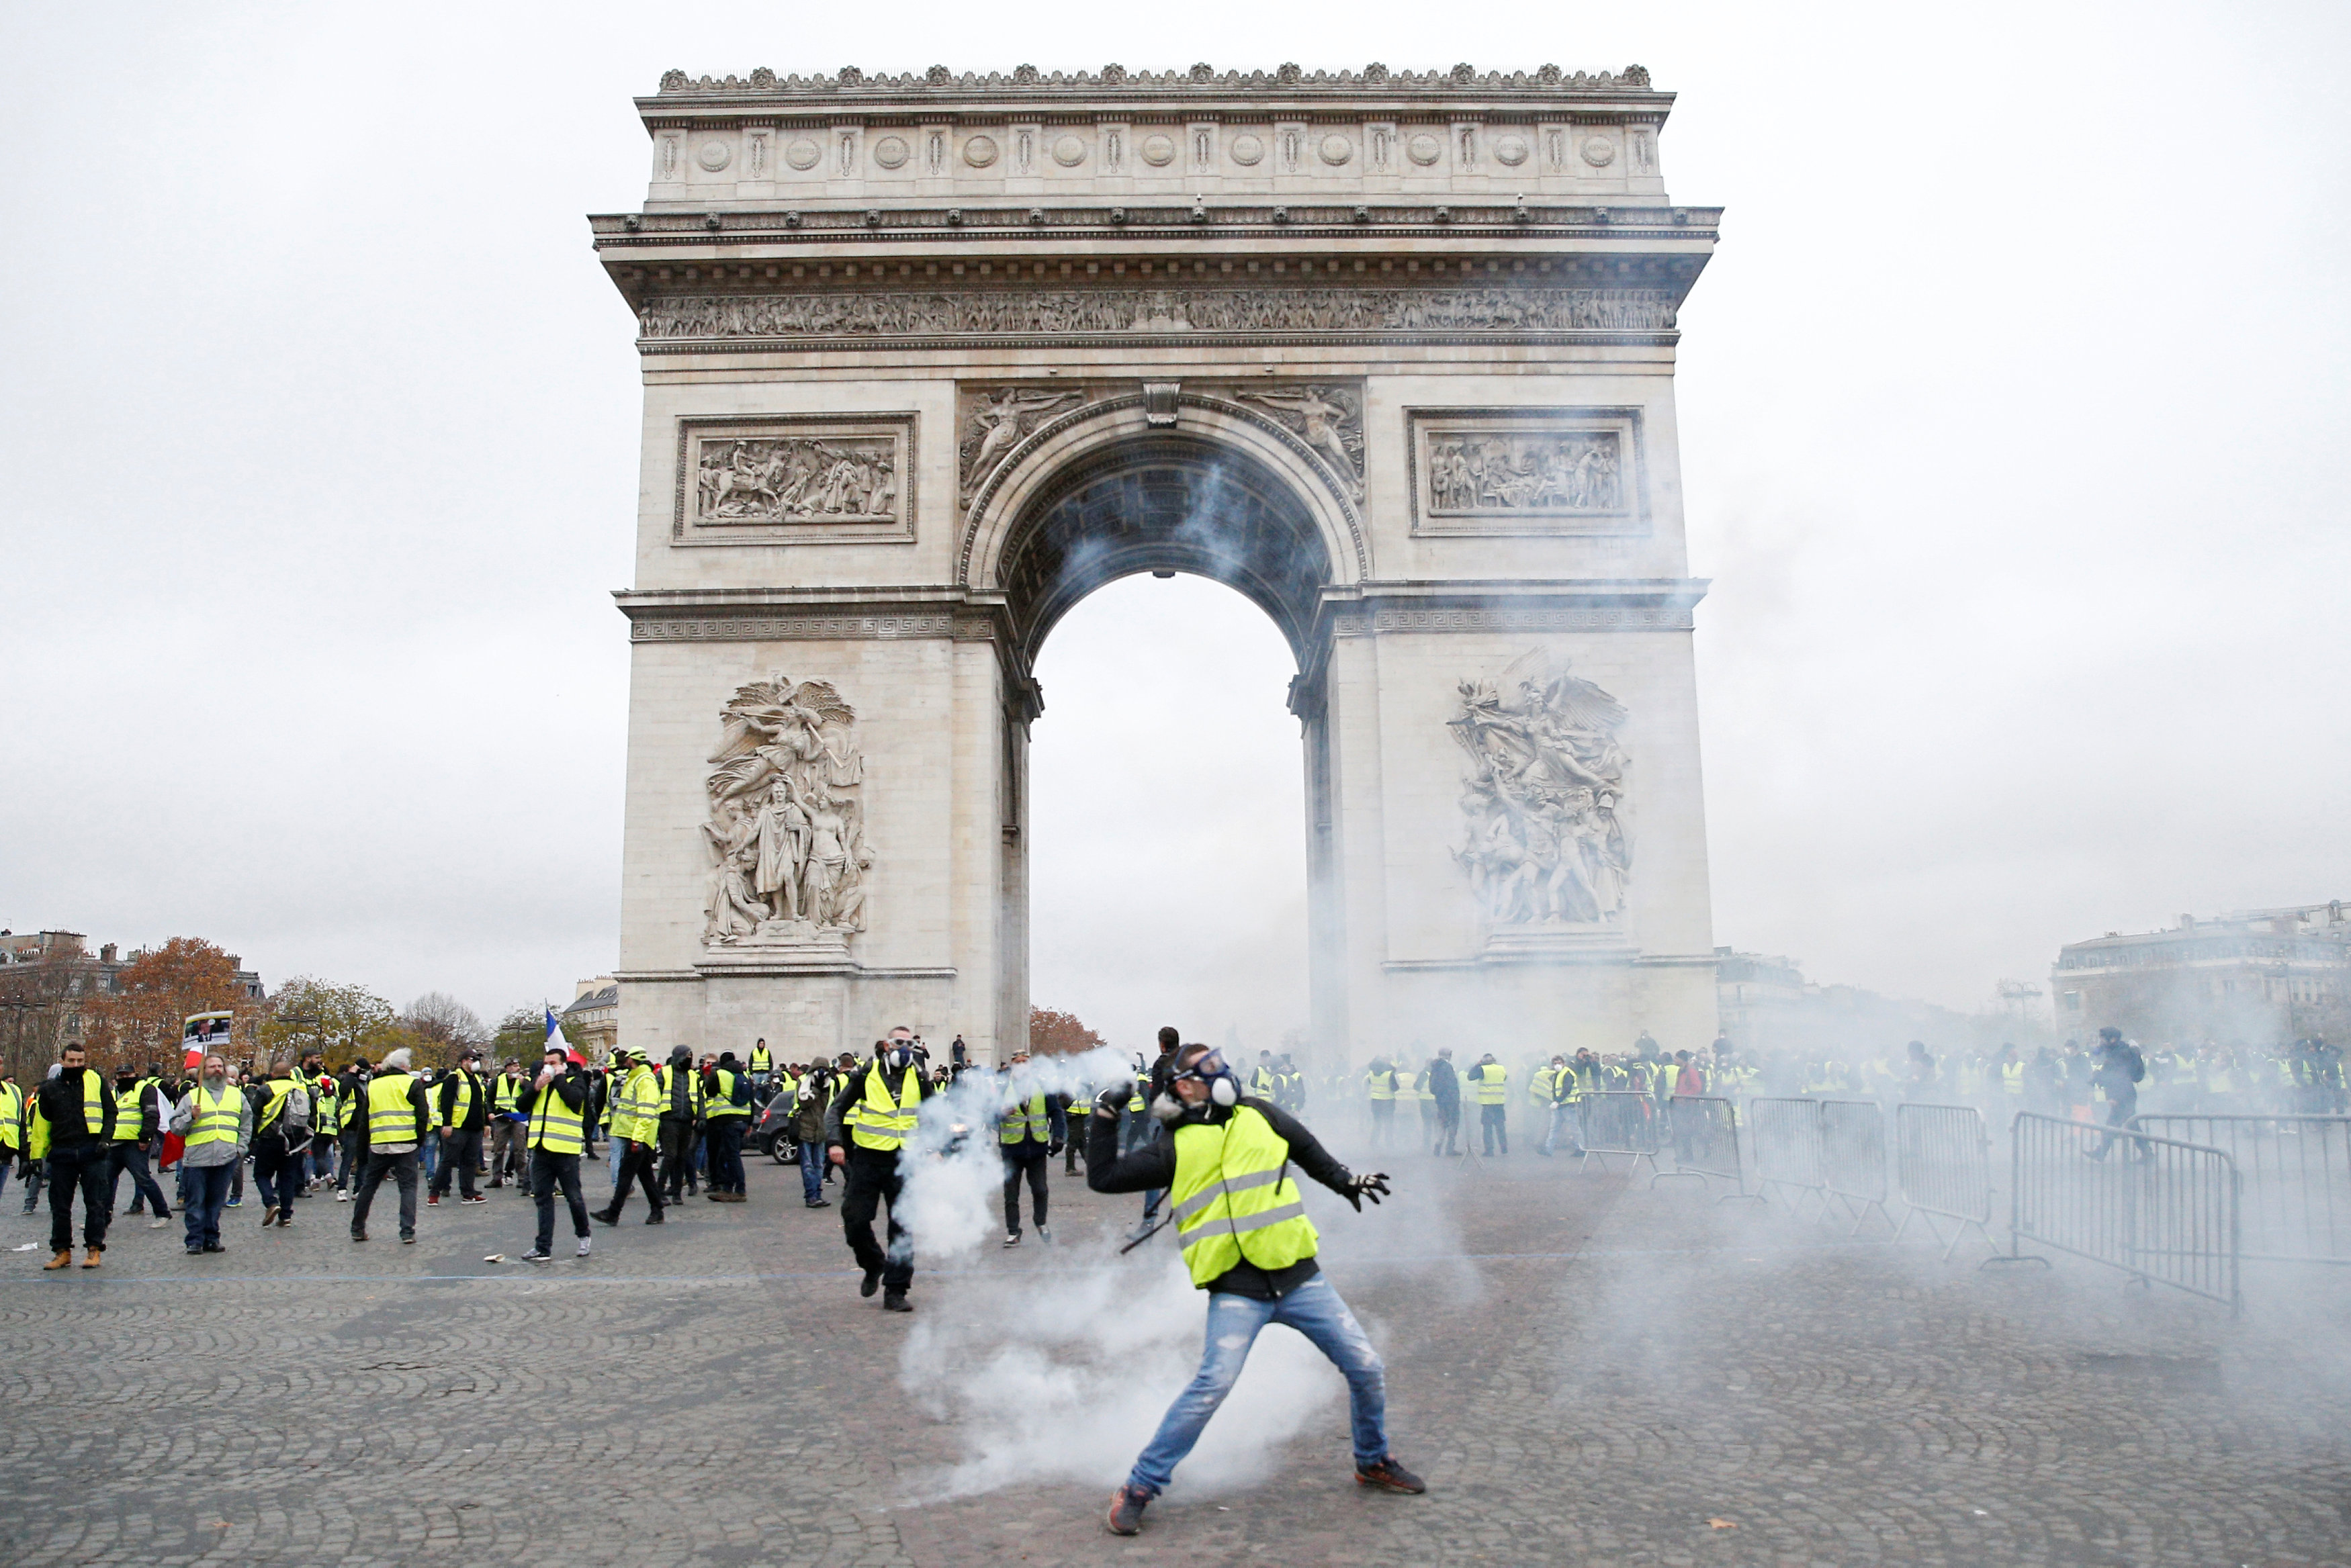 الغاز المسيل للدموع يسيطر على الأجواء قرب قوس النصر في العاصمة باريس خلال احتجاجات "السترات الصفراء". رويترز